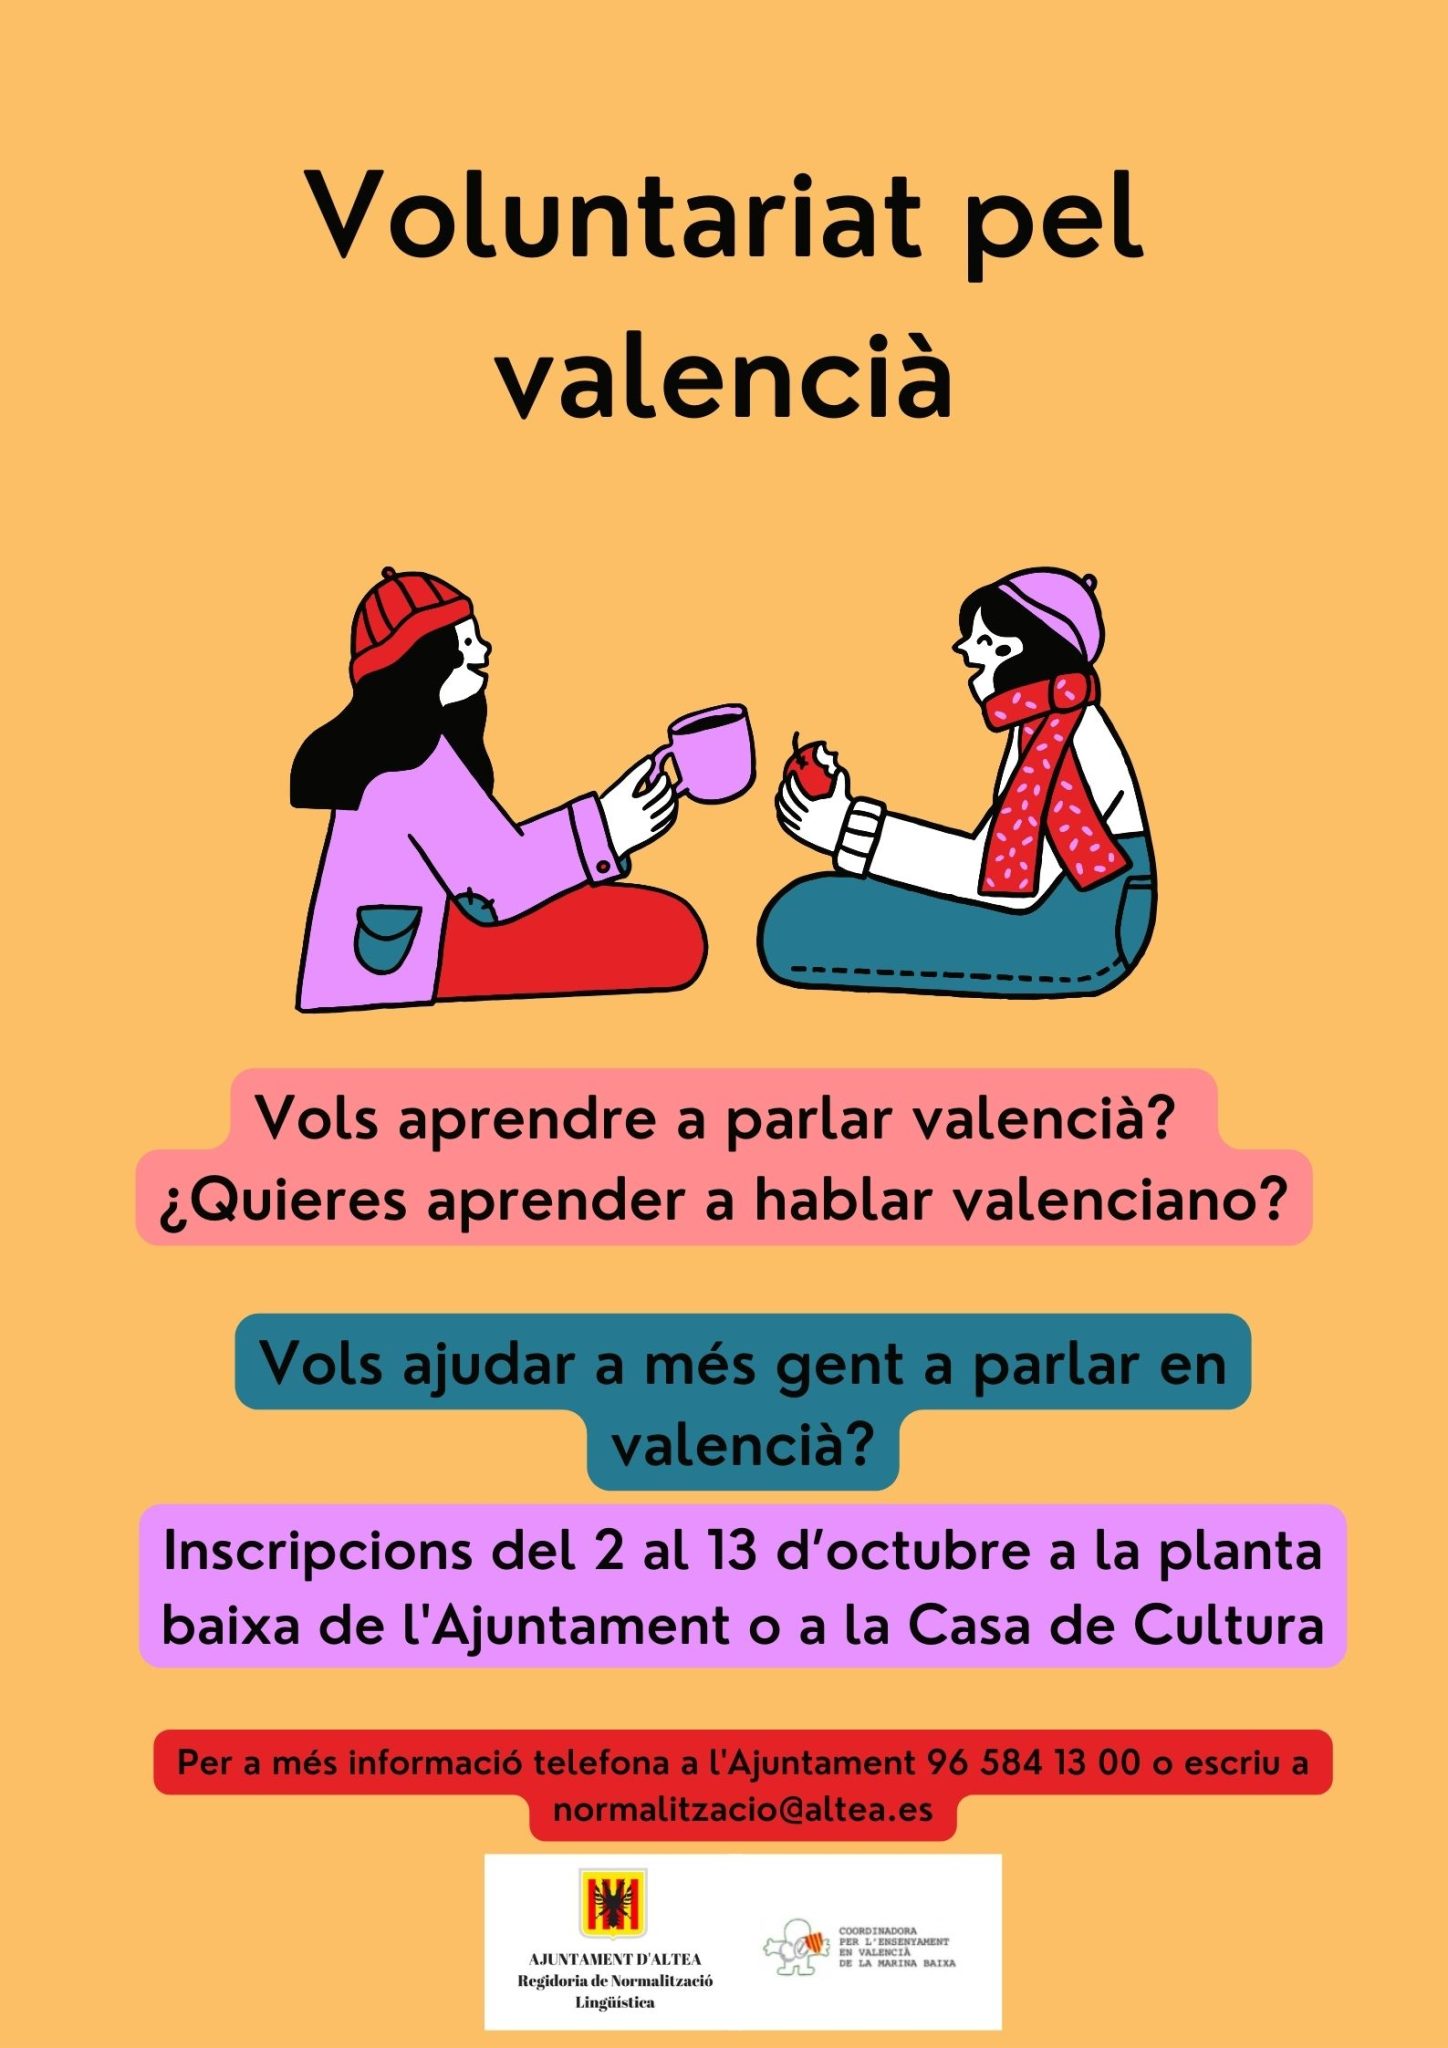 Vols aprendre a parlar valencià? Vols ajudar a més gent a parlar en valencià? Voluntariat pel valencià. Inscripcions del 2 al 13 d’octubre a la planta baixa de l’Ajuntament o a la Casa de Cultura. Més informació 96 584 13 00 – normalitzacio@altea.es. 